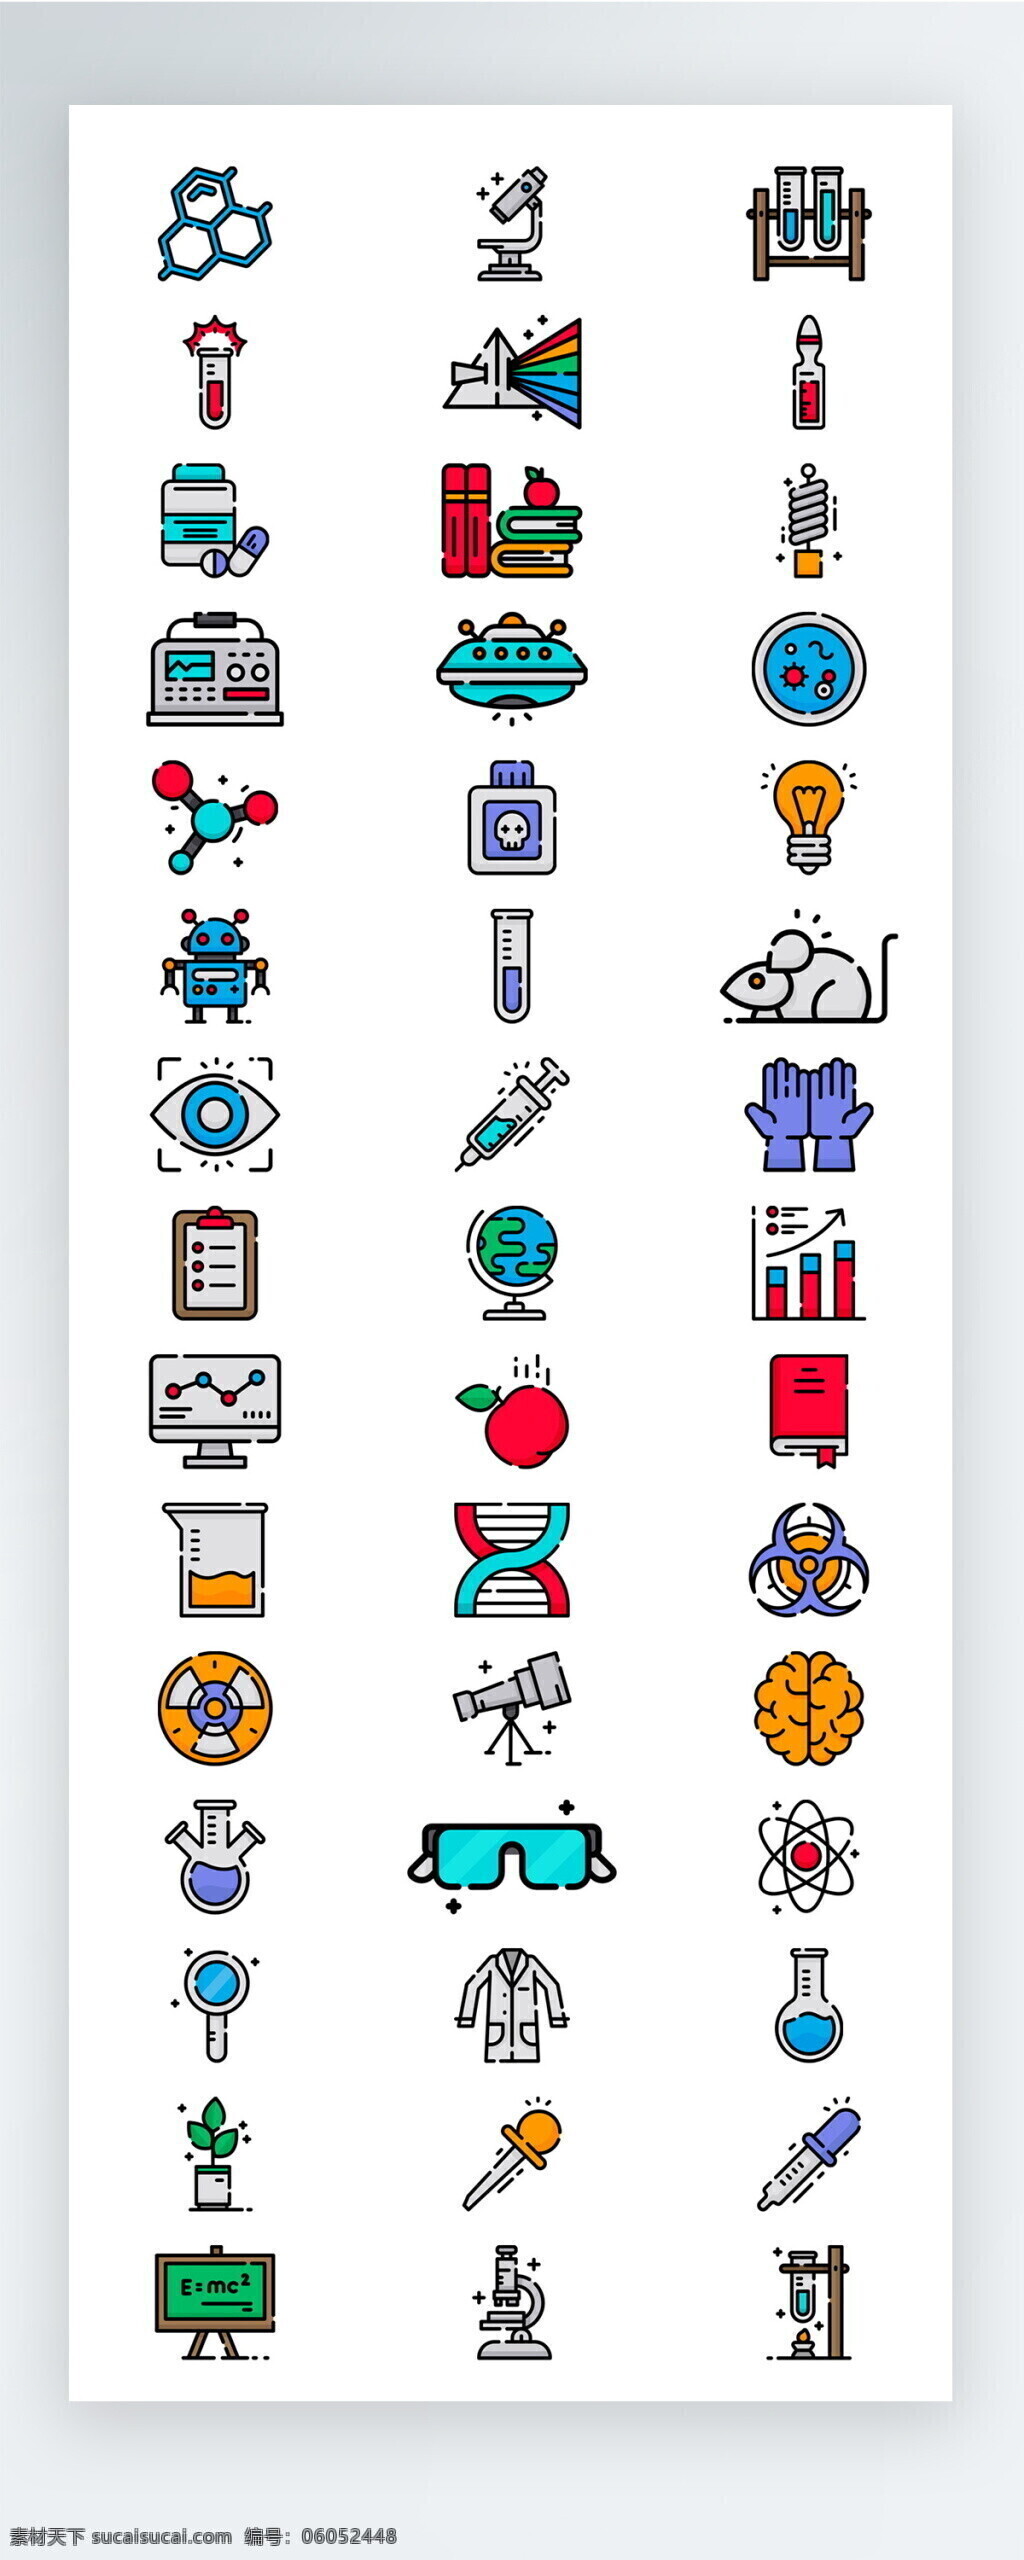 彩色 医疗 教育 学习 图标 矢量 icon icon图标 ui 手机 拟物 工具 护理 学校 工作